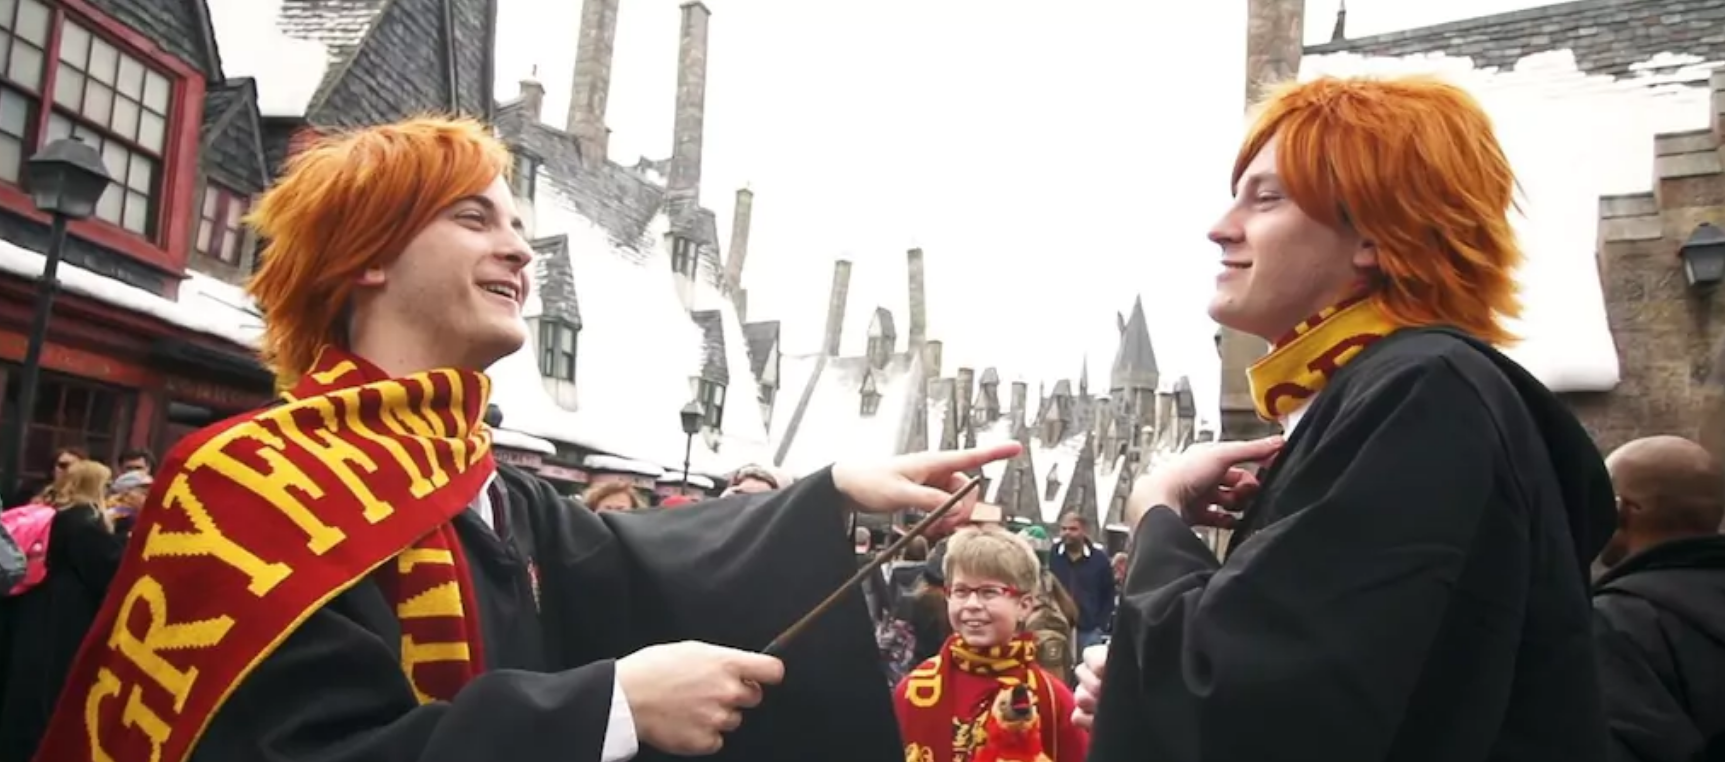 Imagem: reprodução A Celebration of Harry Potter